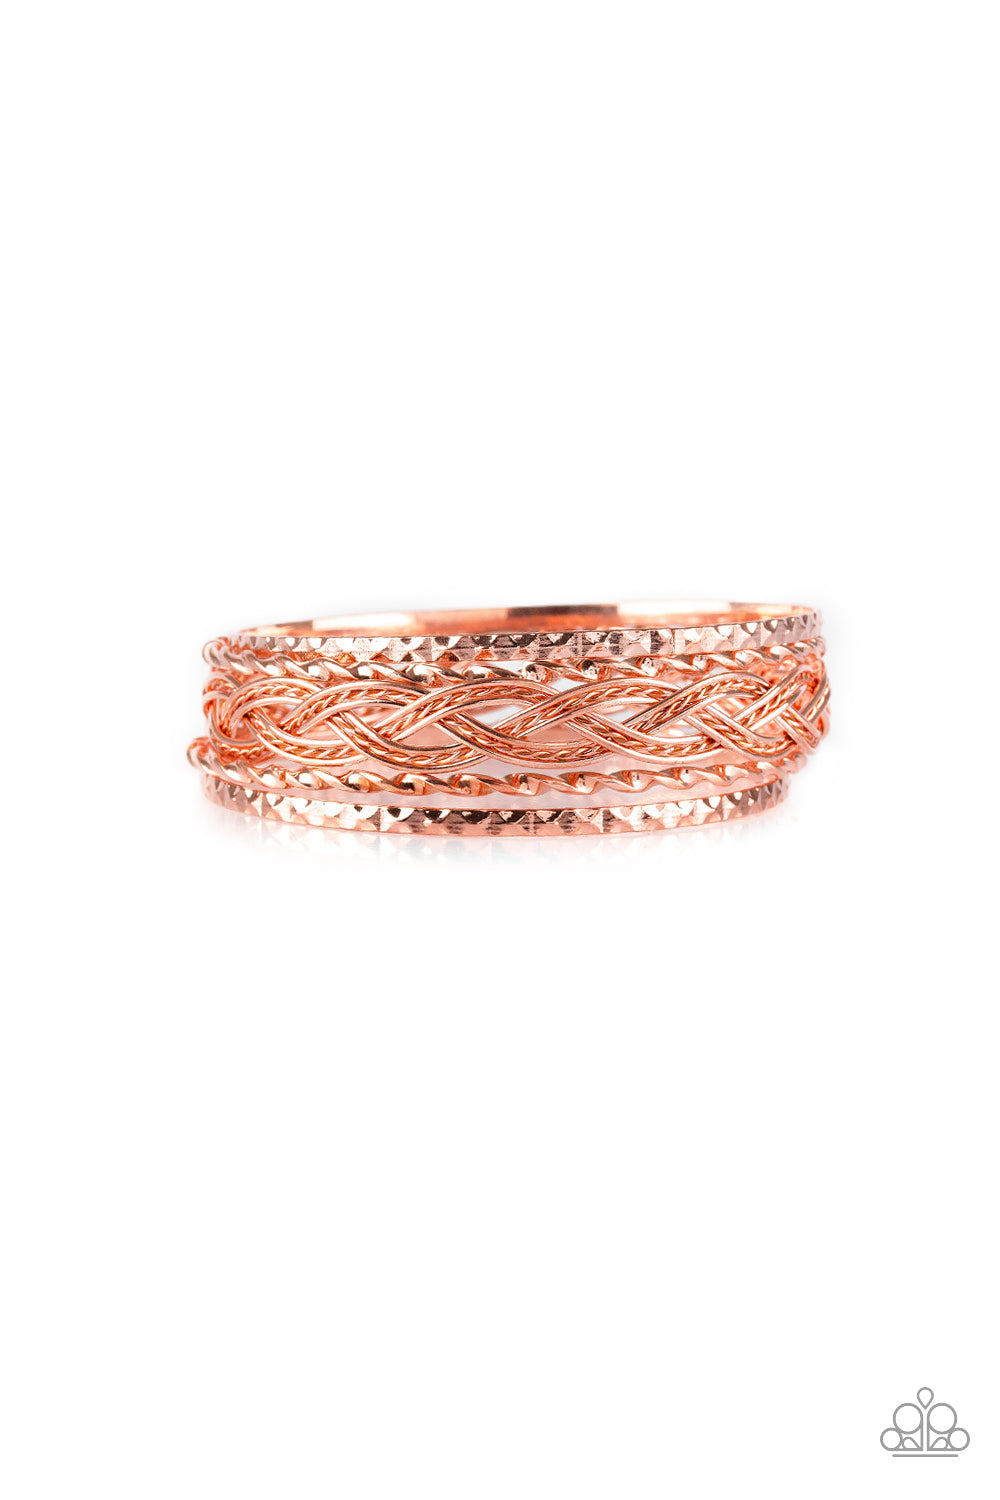 Straight Street Bracelet - Copper